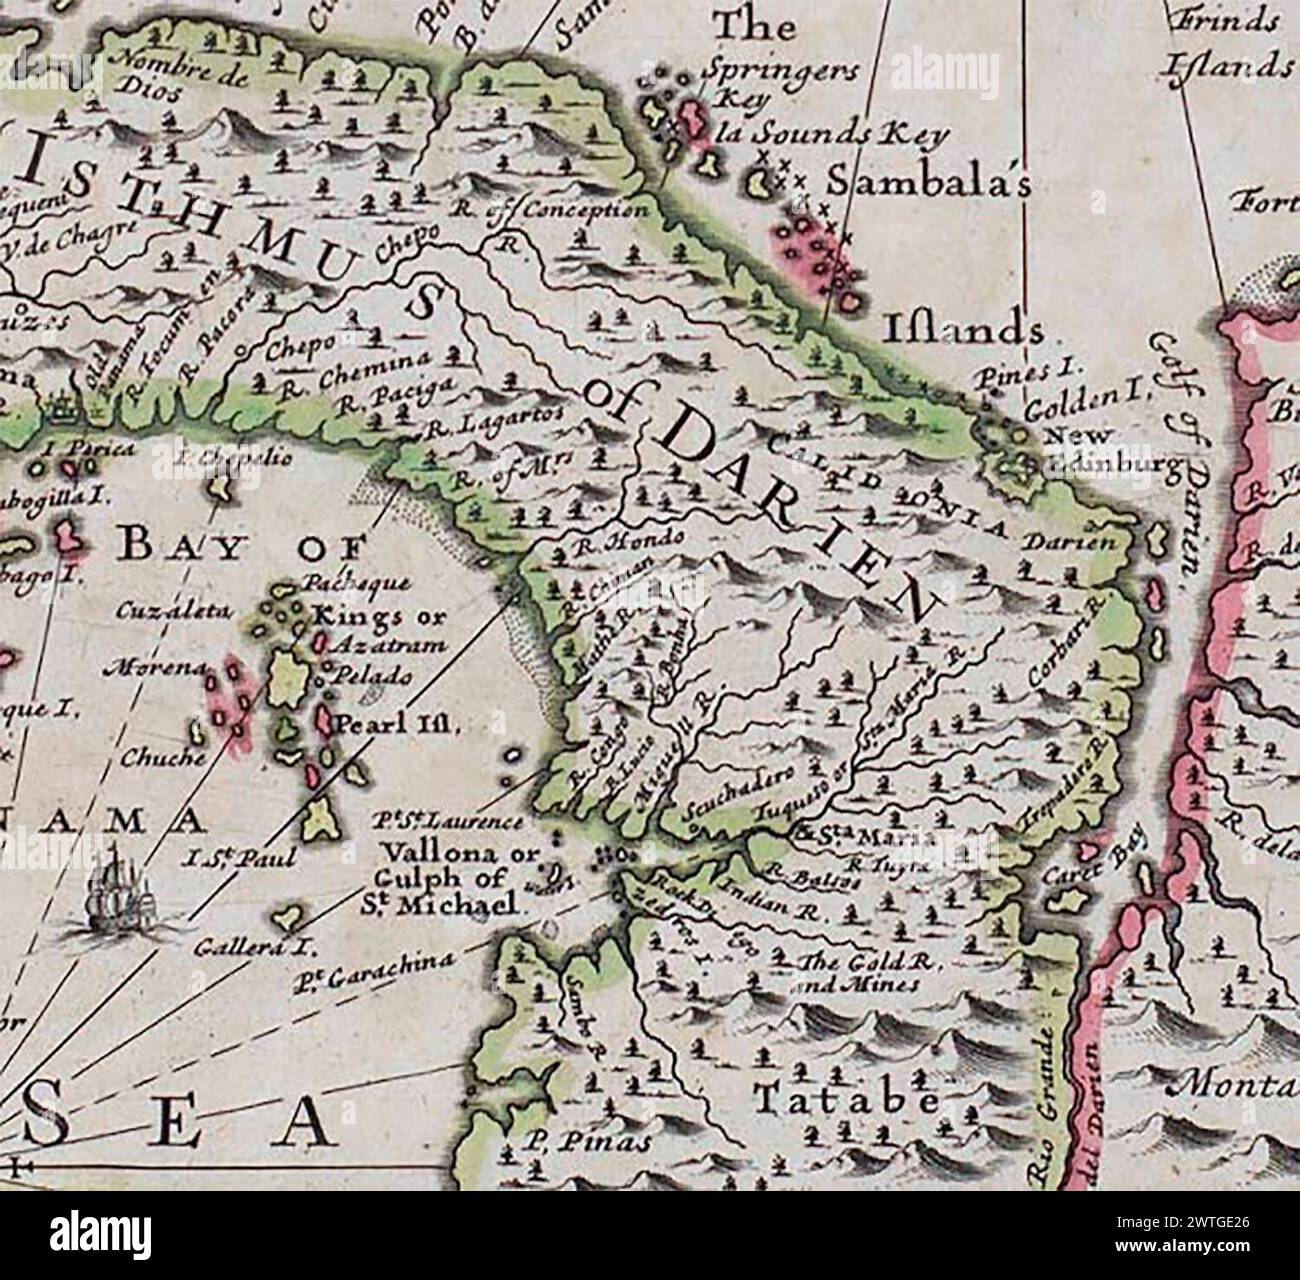 ANON. Una nuova mappa dell'istmo di Darien in America, del Golfo di Panama, del golfo di Vallona o di St. Michael, con le sue isole e paesi adiacenti 1699 Foto Stock